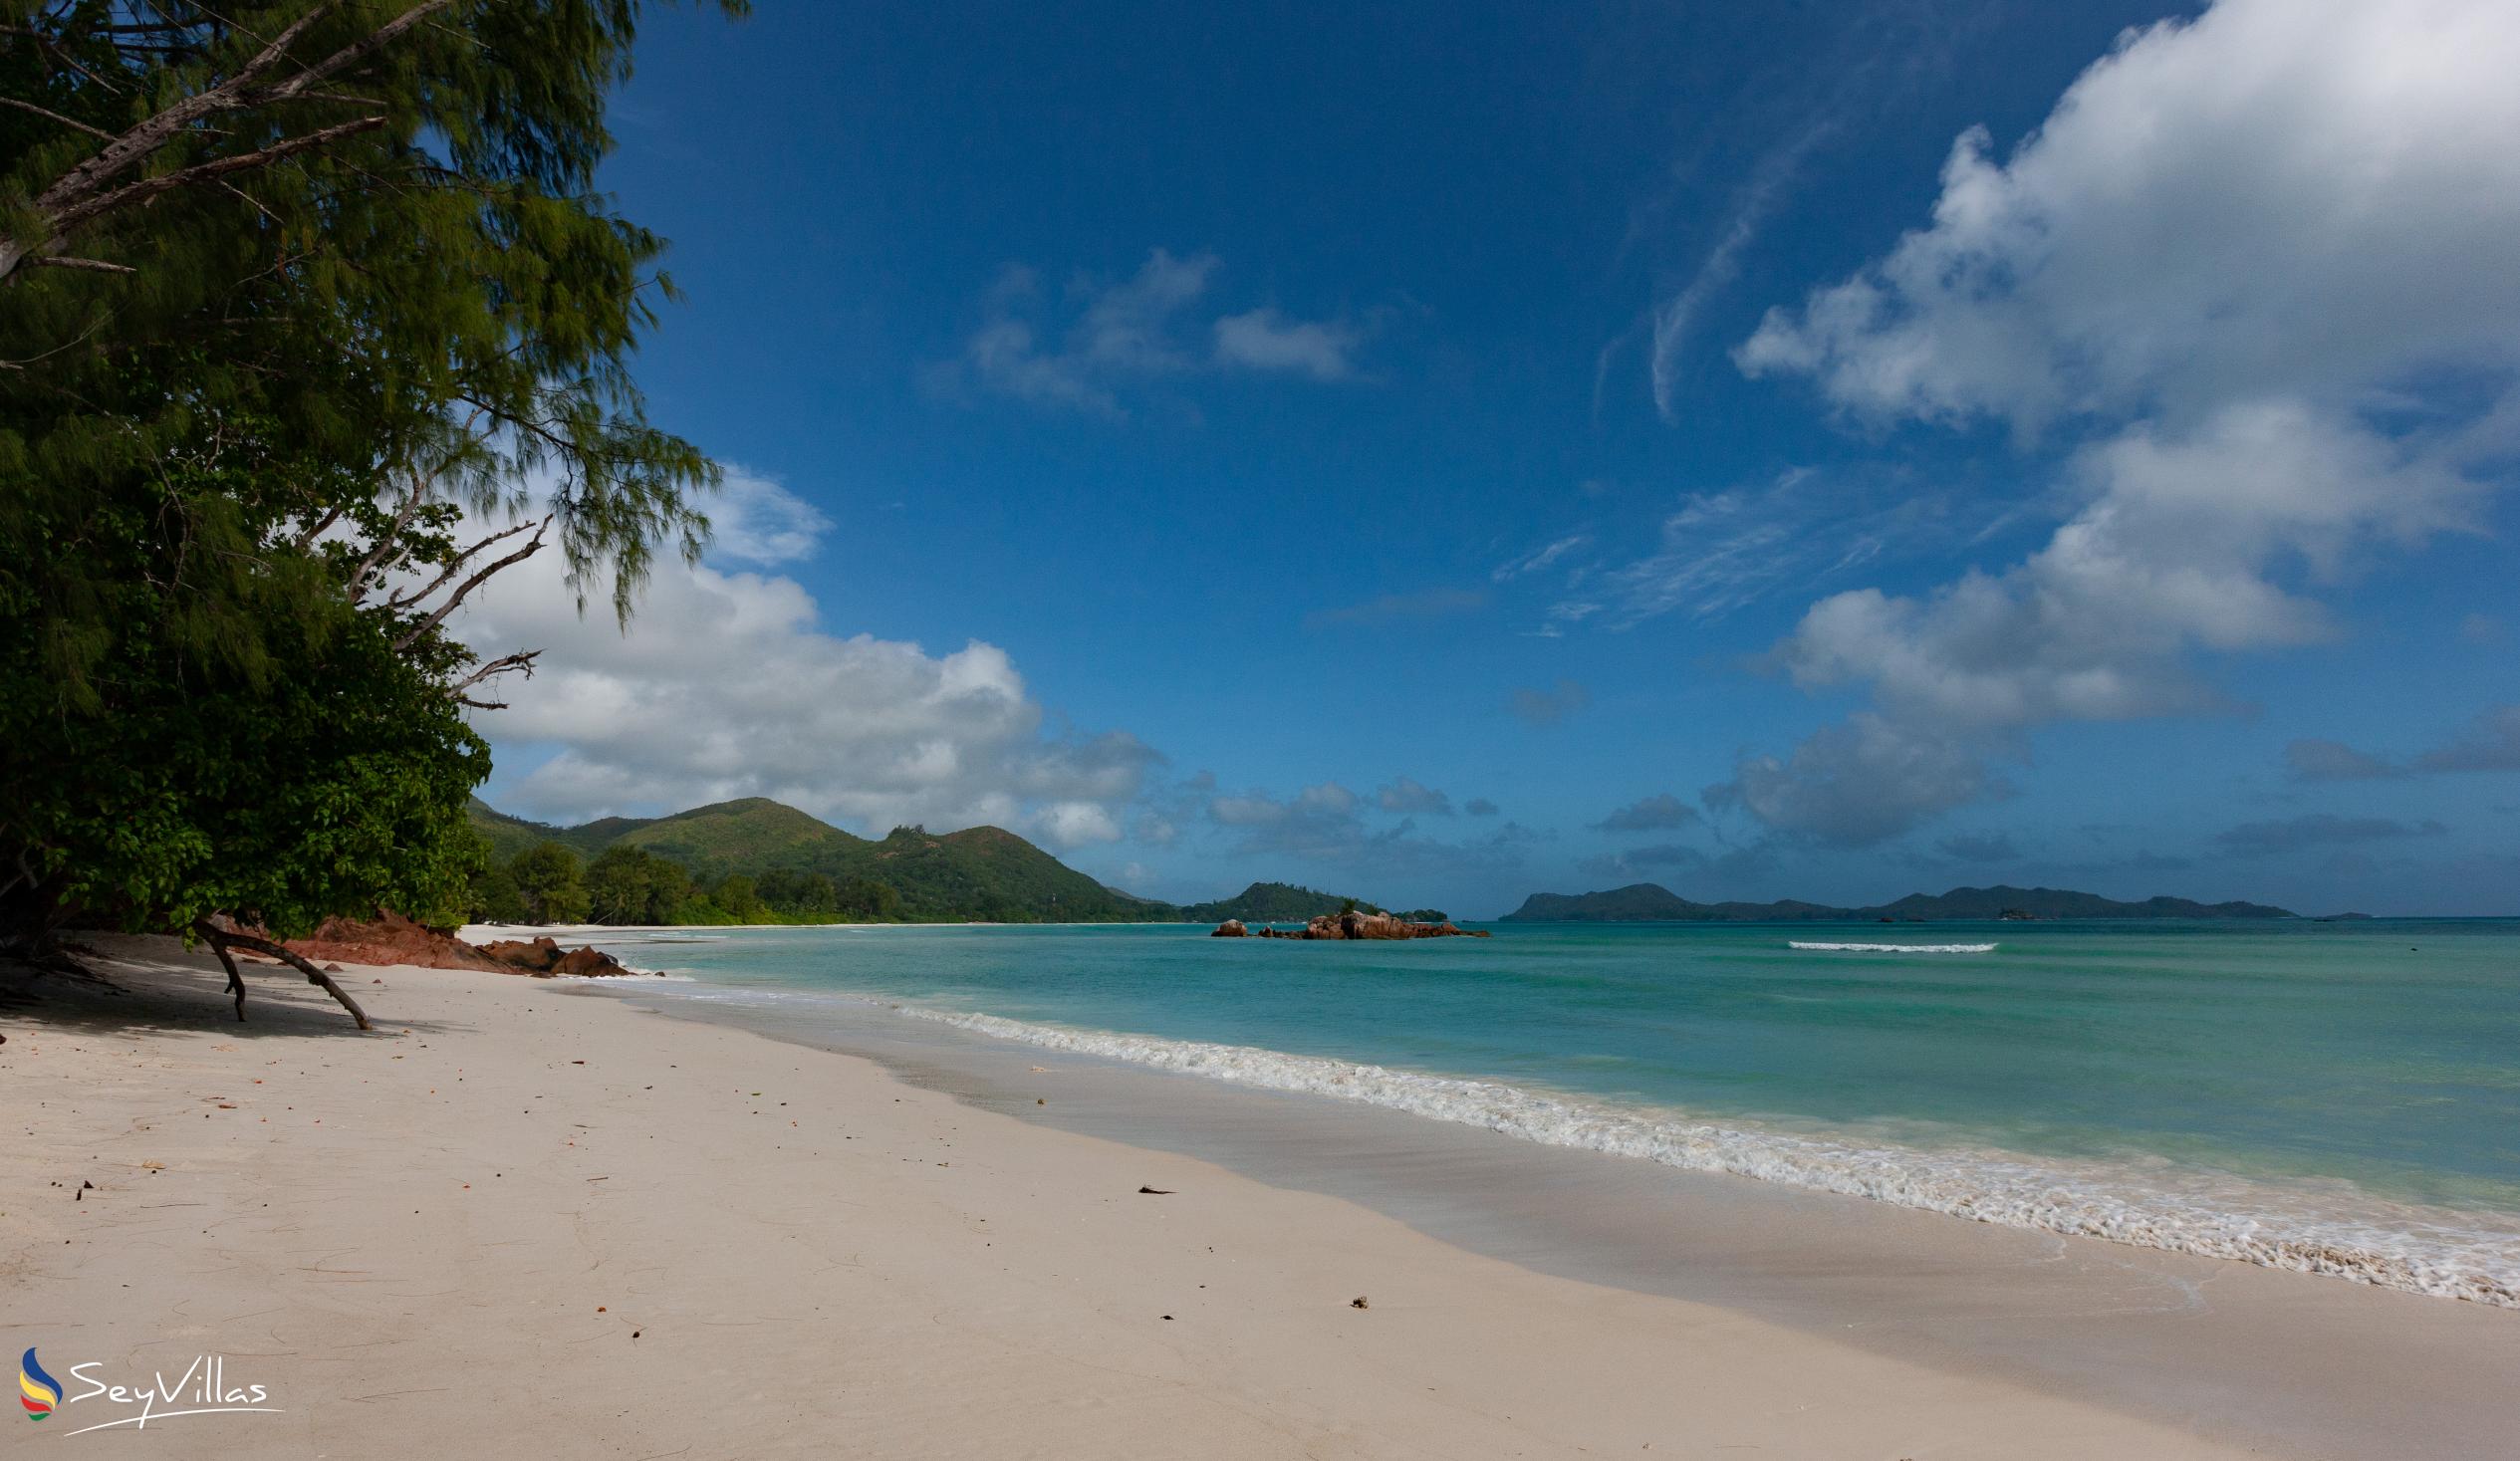 Foto 20: Villa Sole - Posizione - Praslin (Seychelles)